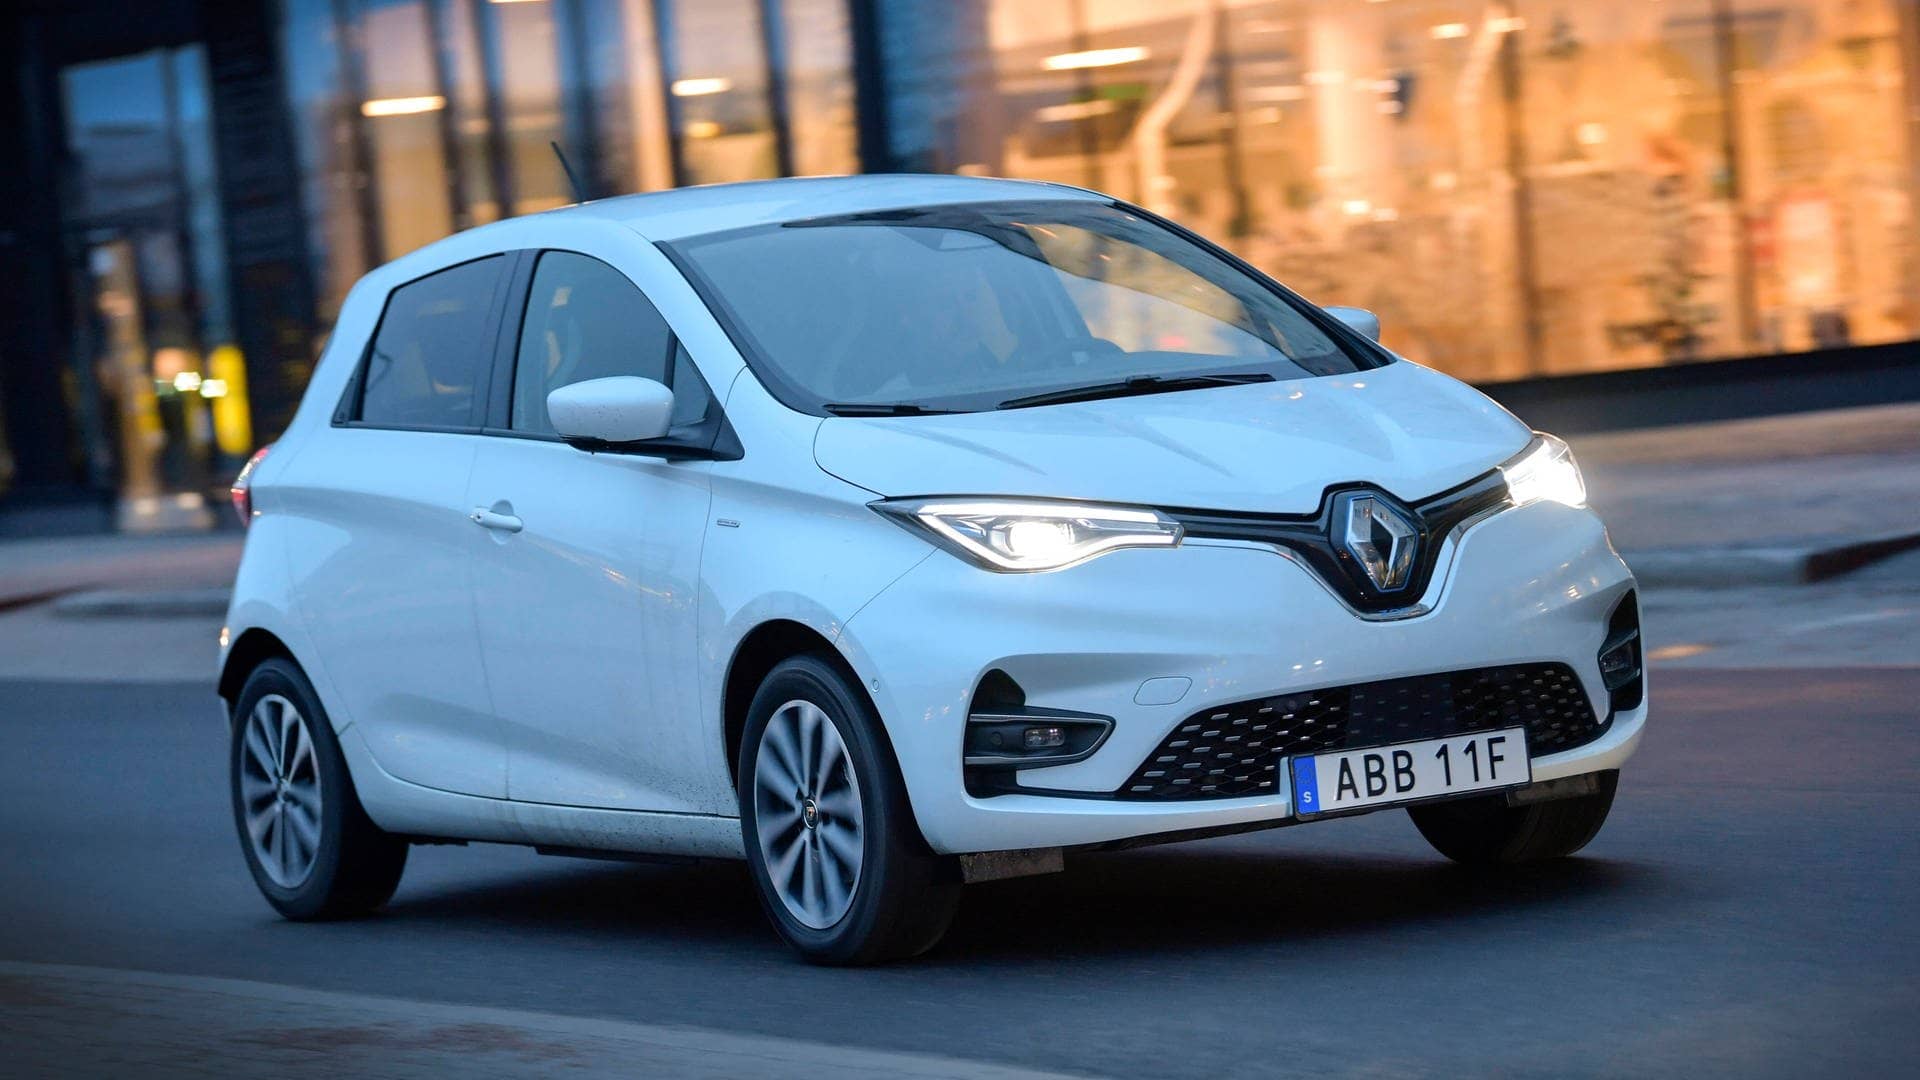 Der Renault Zoe ist schon länger auf dem Markt. Gerade gibt es das Auto sogar zu Schnäppchenpreisen von ca. 7.000 Euro, sagt die Expertin. „So günstig kommt man kaum an ein sehr gutes Elektroauto heran, das auch für die Stadt sehr tauglich ist.“ (Foto: IMAGO, IMAGO / TT)